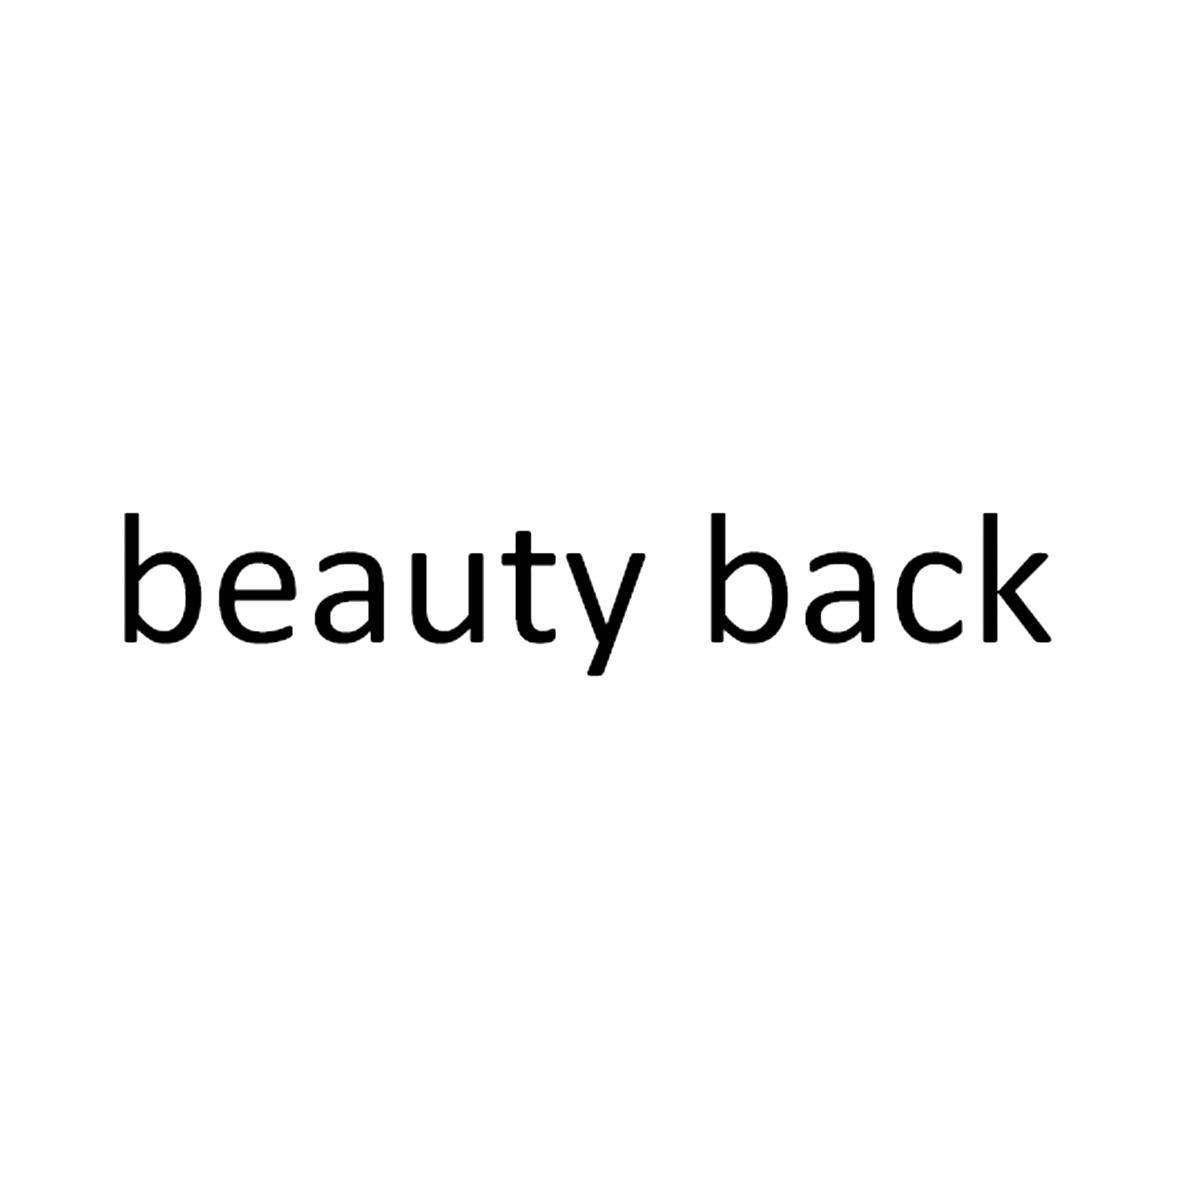 商标文字beauty back商标注册号 41167553,商标申请人北京天实达商贸